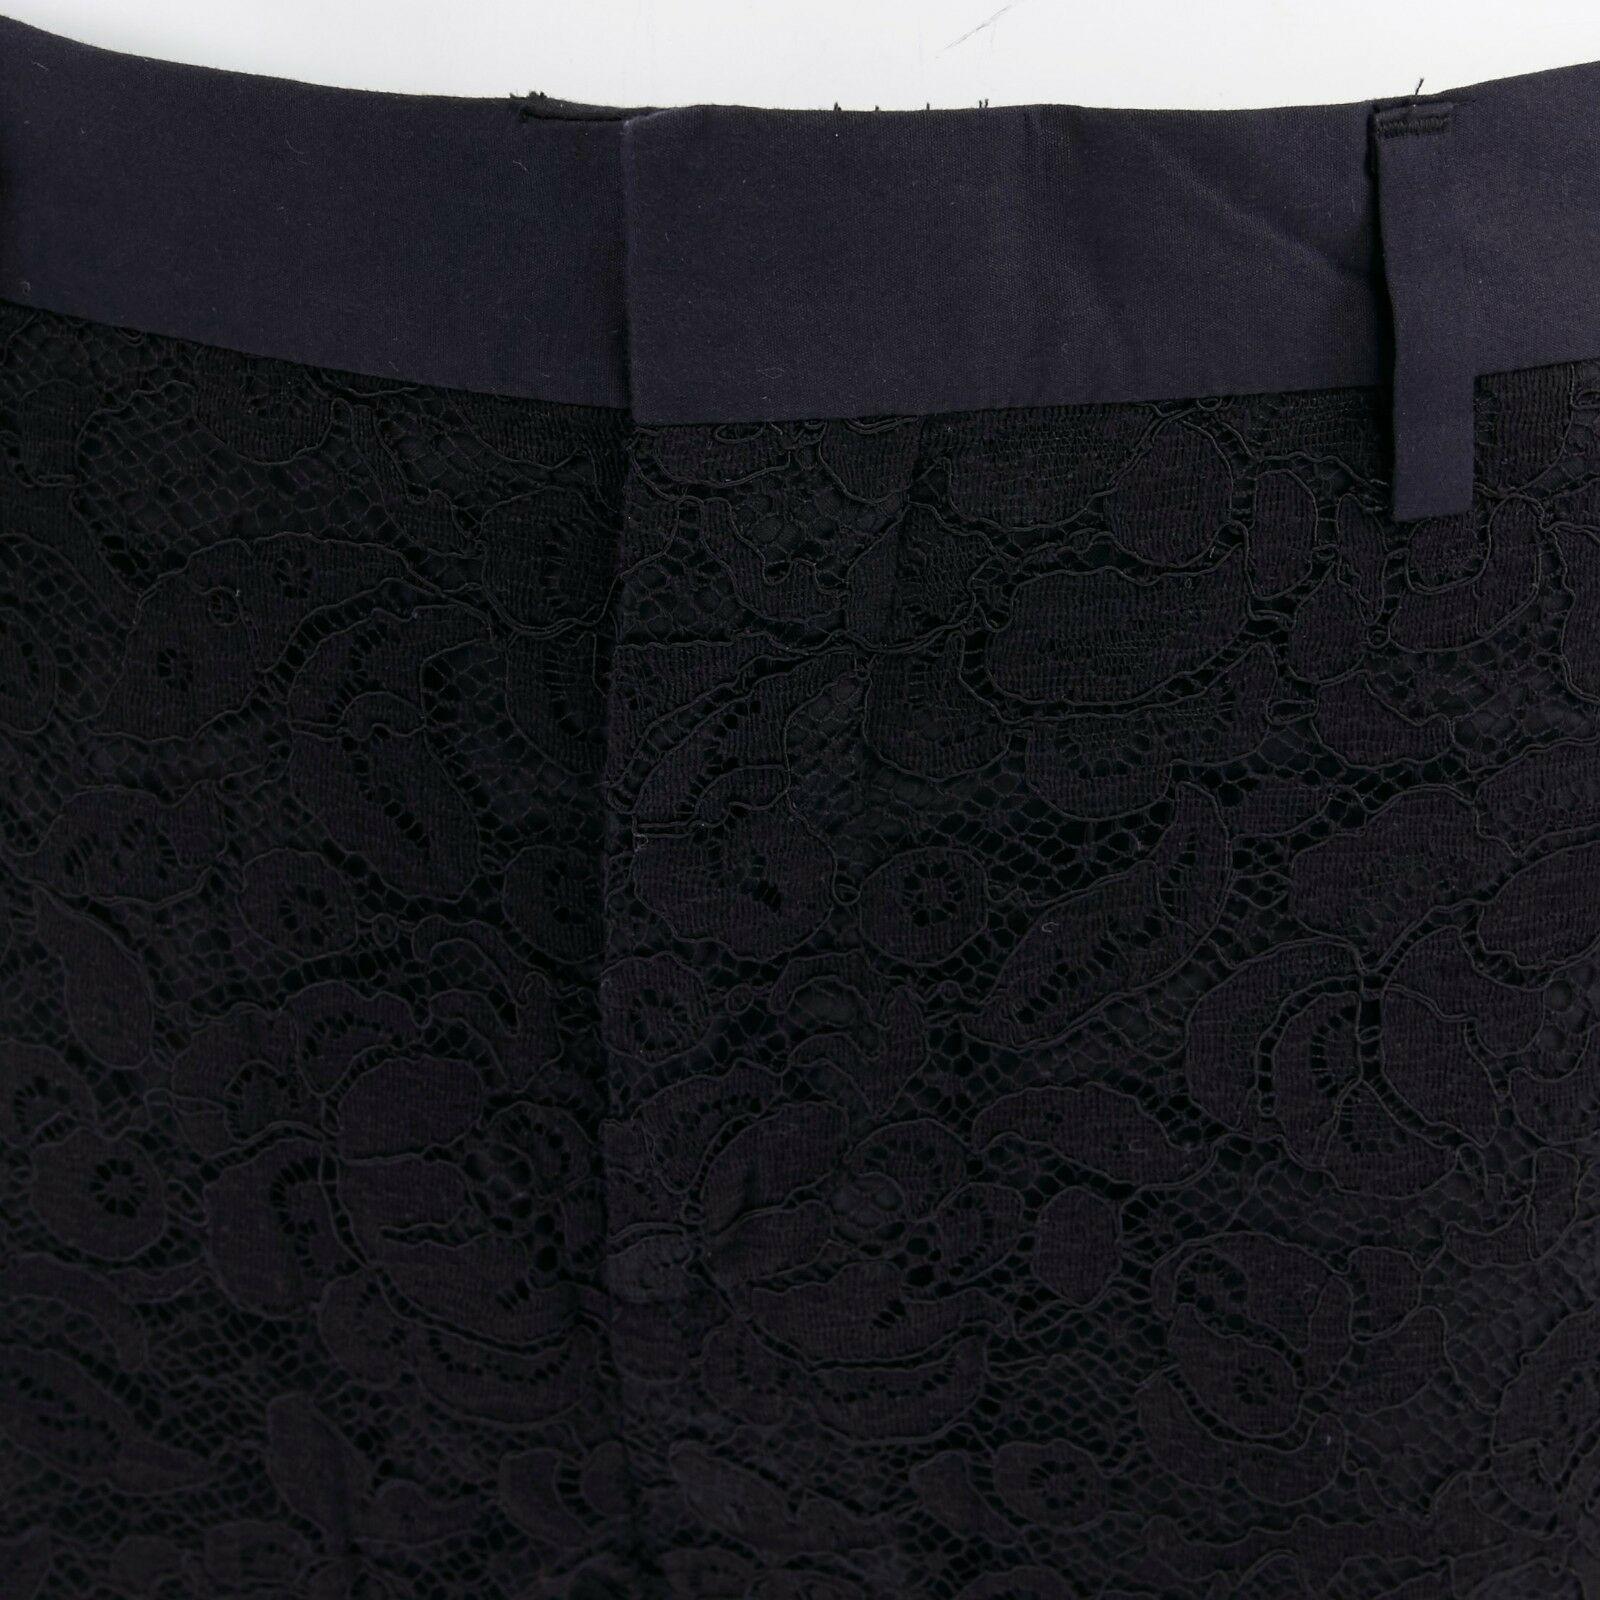 GIVENCHY TISCI black floral lace faux pocket trim shorts lined tux pants FR36 S 1